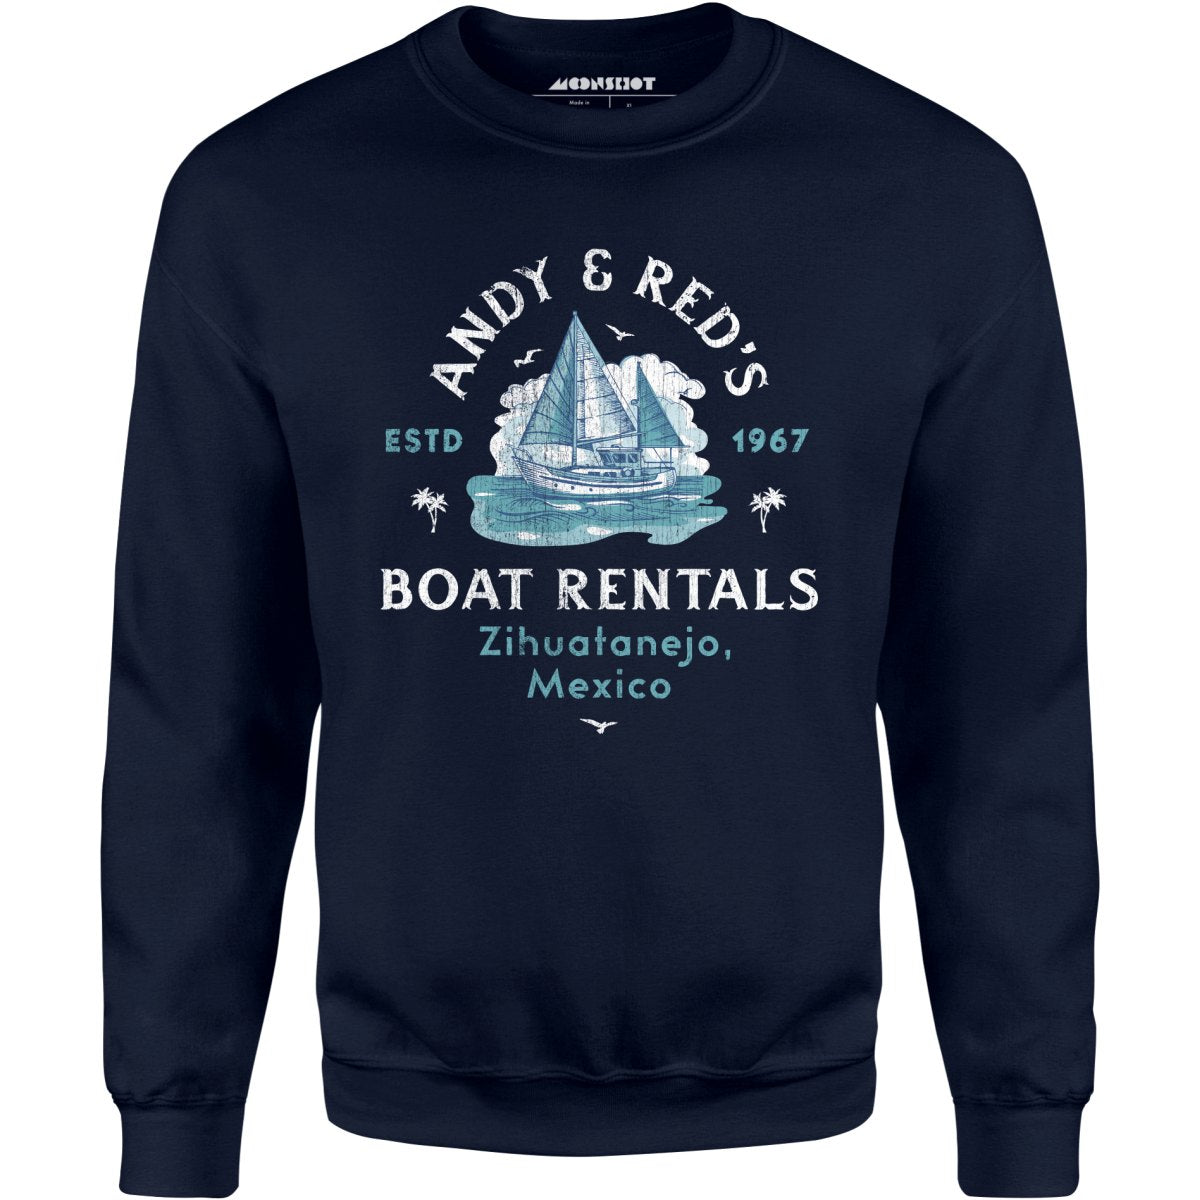 Andy & Red's Boat Rentals - Unisex Sweatshirt